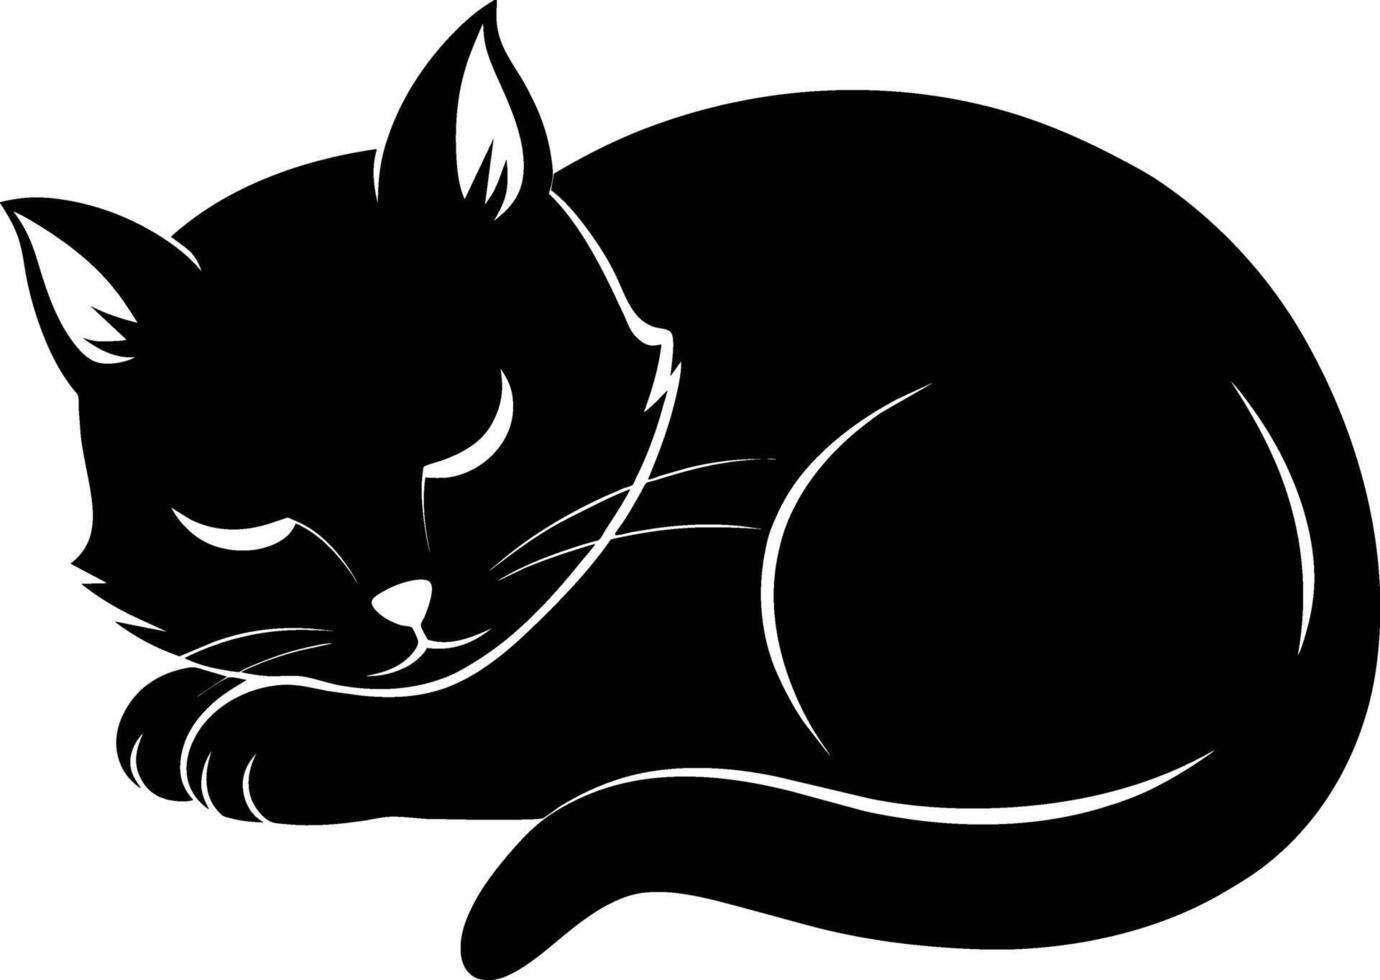 tyst lugn en graciös silhuett av en sovande katt vektor